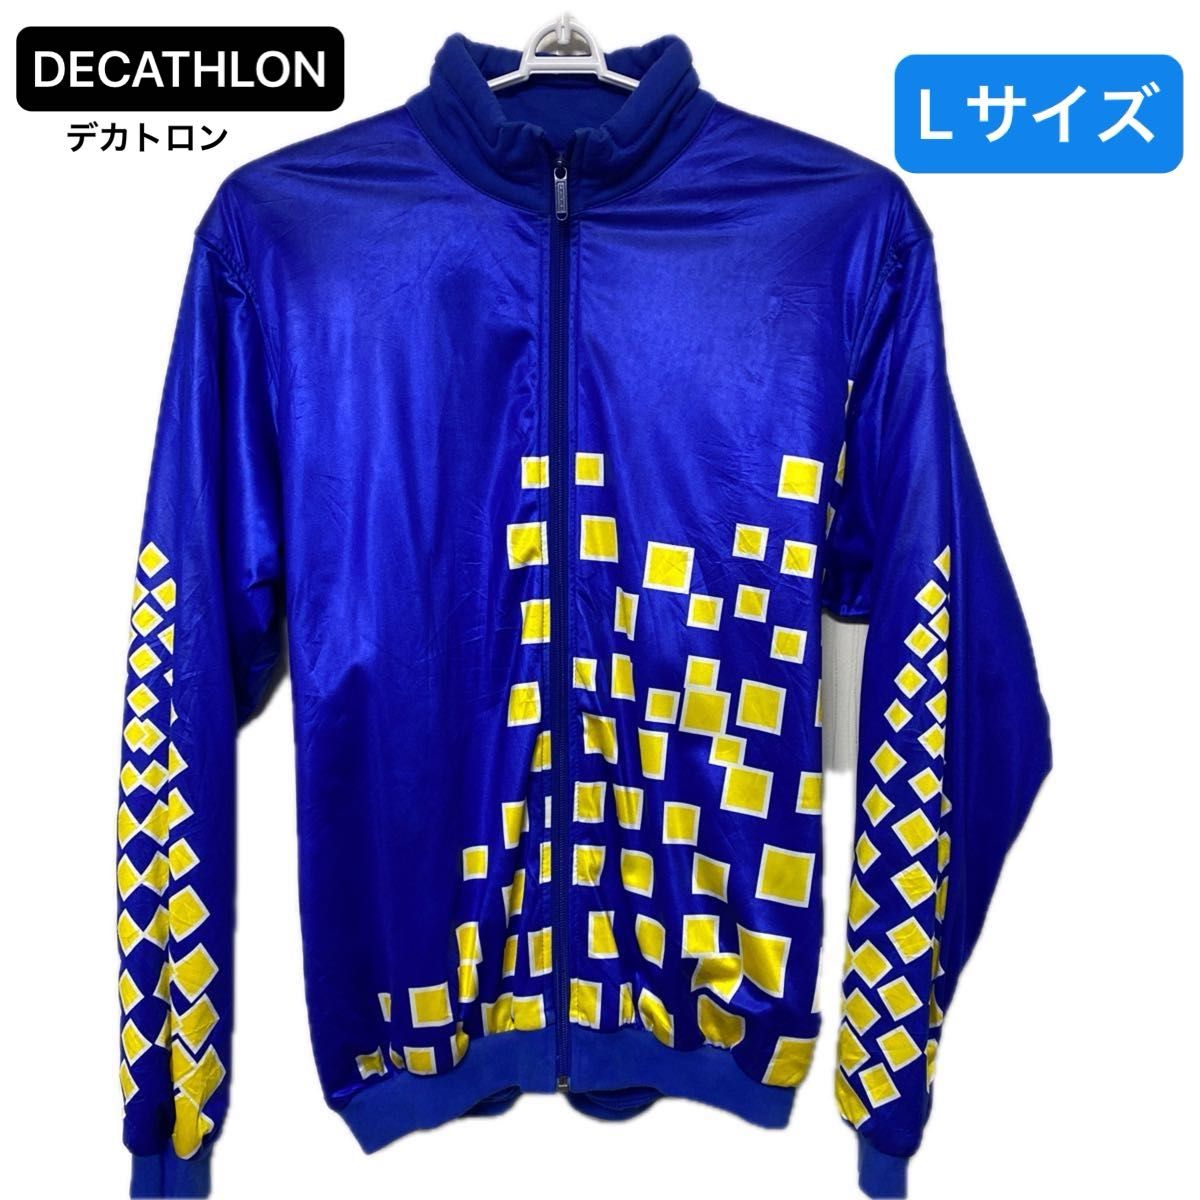 DECATHLON(デカトロン) サイクルジャケット Lサイズ 欧州製